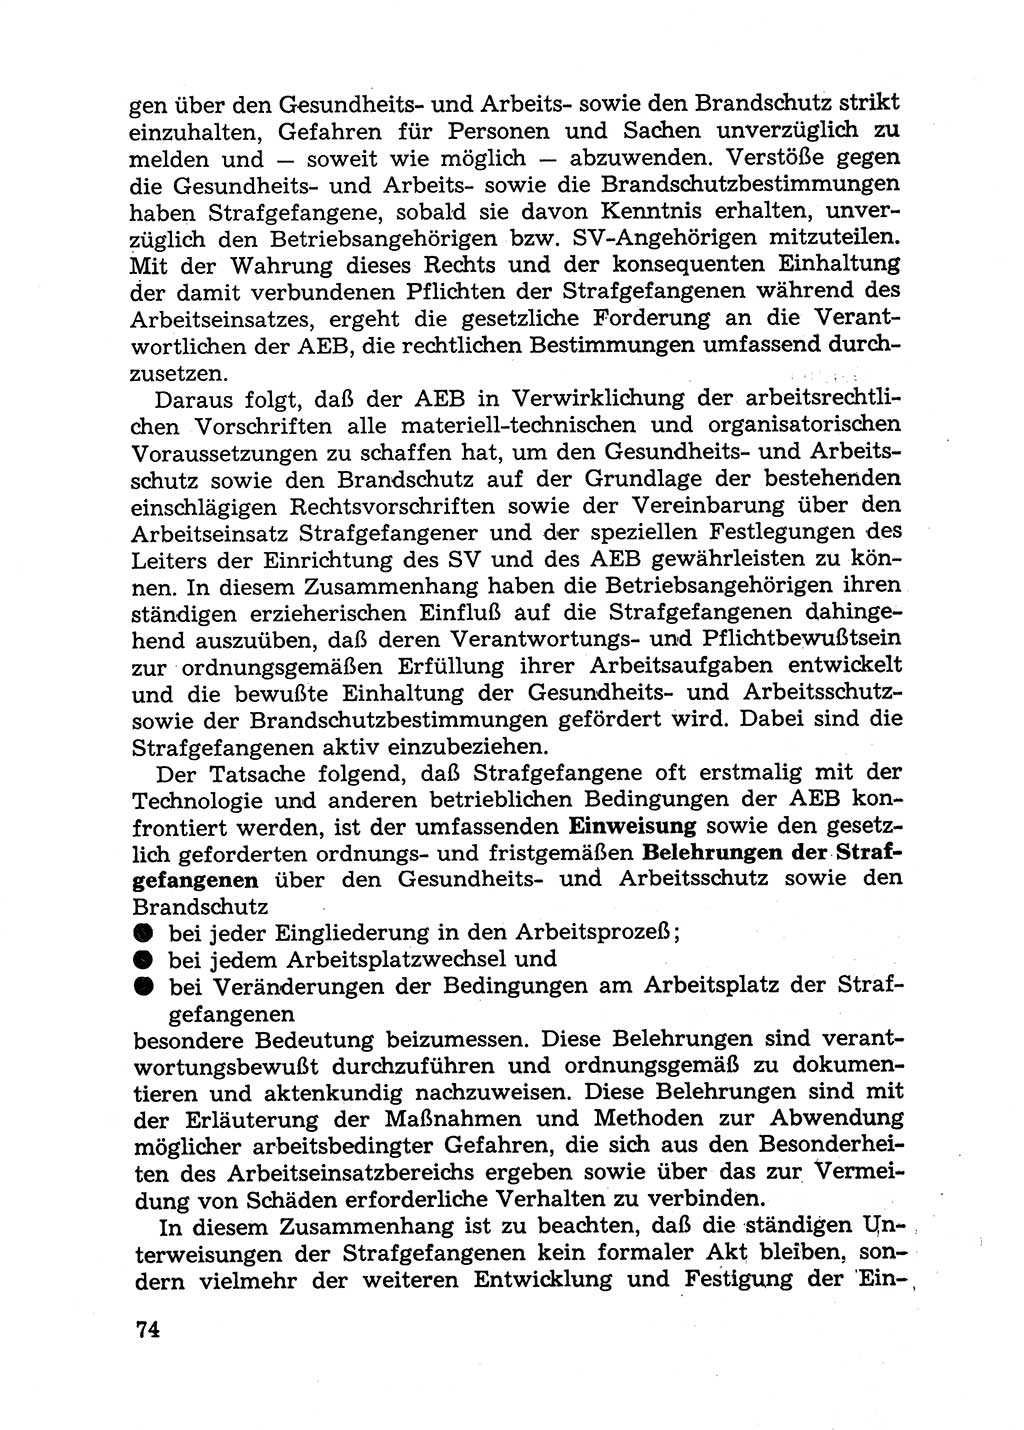 Handbuch für Betriebsangehörige, Abteilung Strafvollzug (SV) [Ministerium des Innern (MdI) Deutsche Demokratische Republik (DDR)] 1981, Seite 74 (Hb. BA Abt. SV MdI DDR 1981, S. 74)